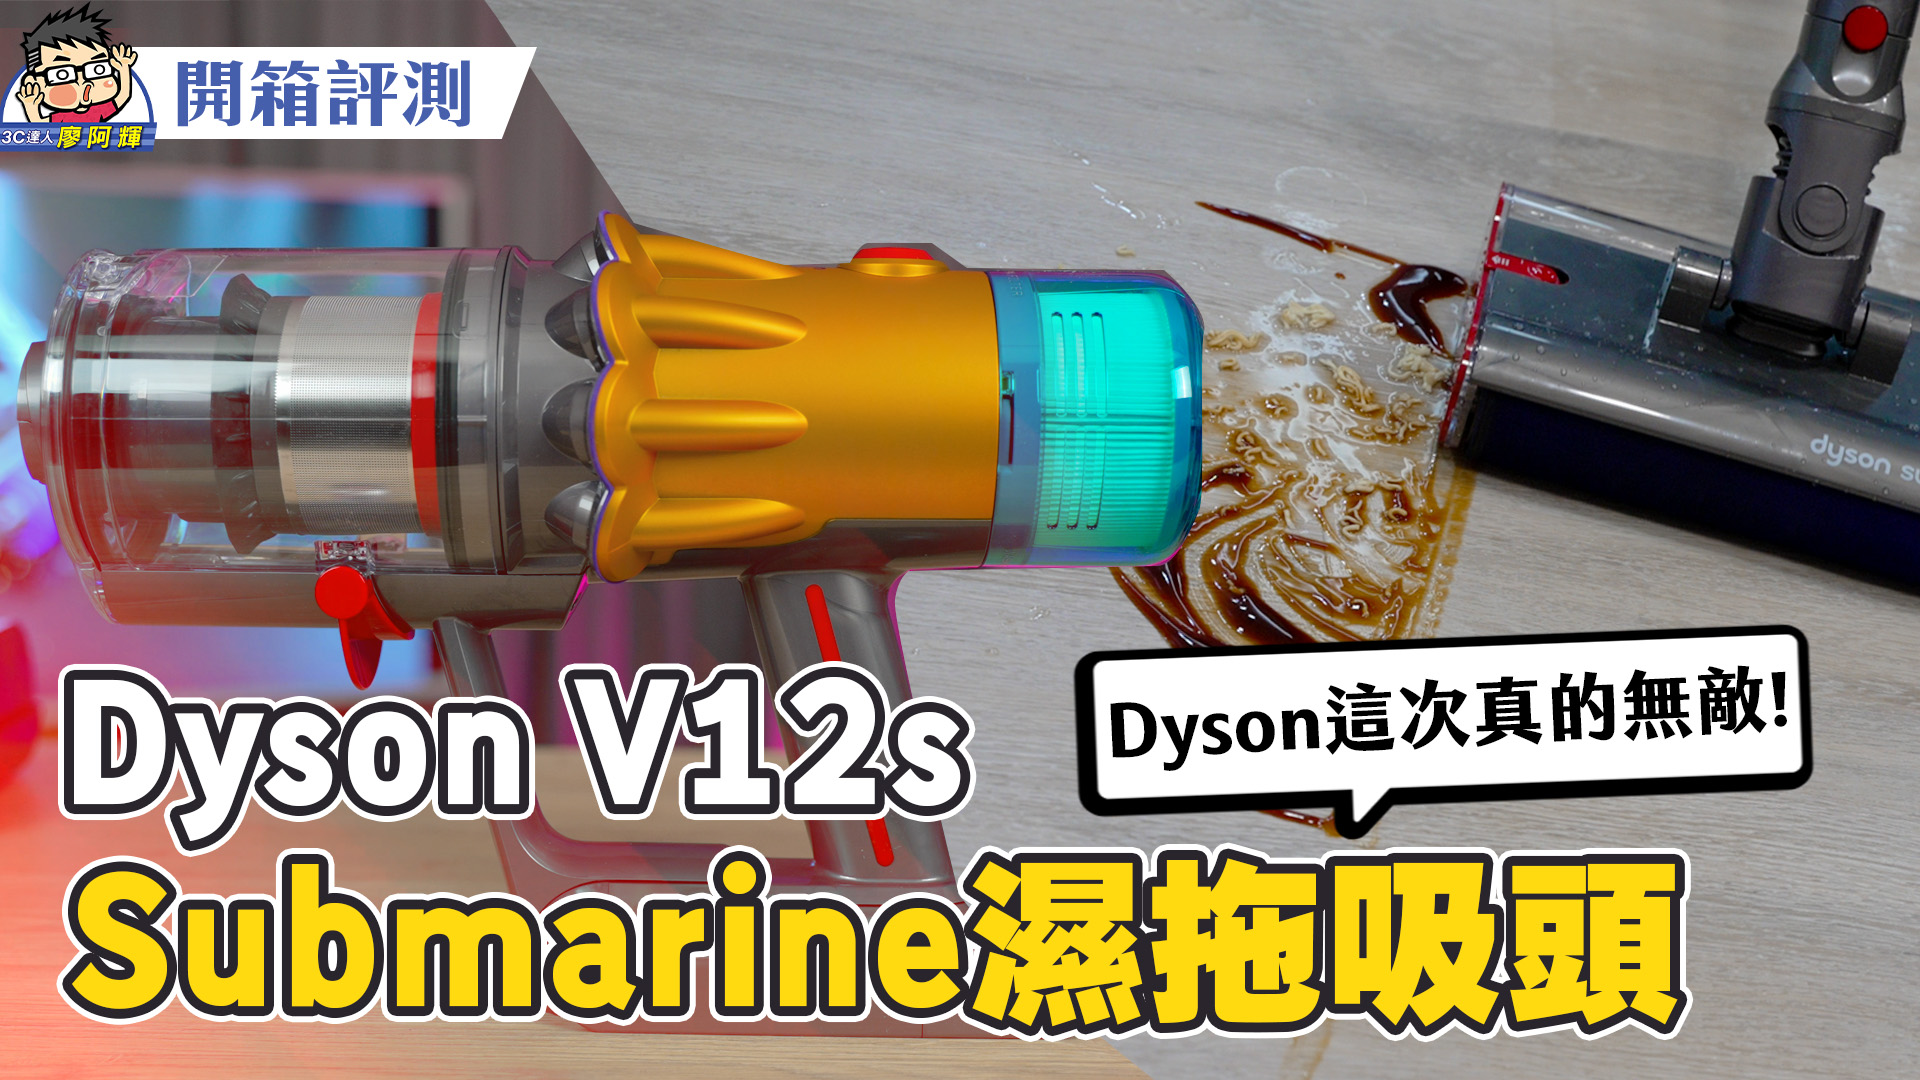 [影片] 拖地功能加入 Dyson V12s Detect Slim Submarine 乾濕全能吸塵器試用分享 @3C 達人廖阿輝